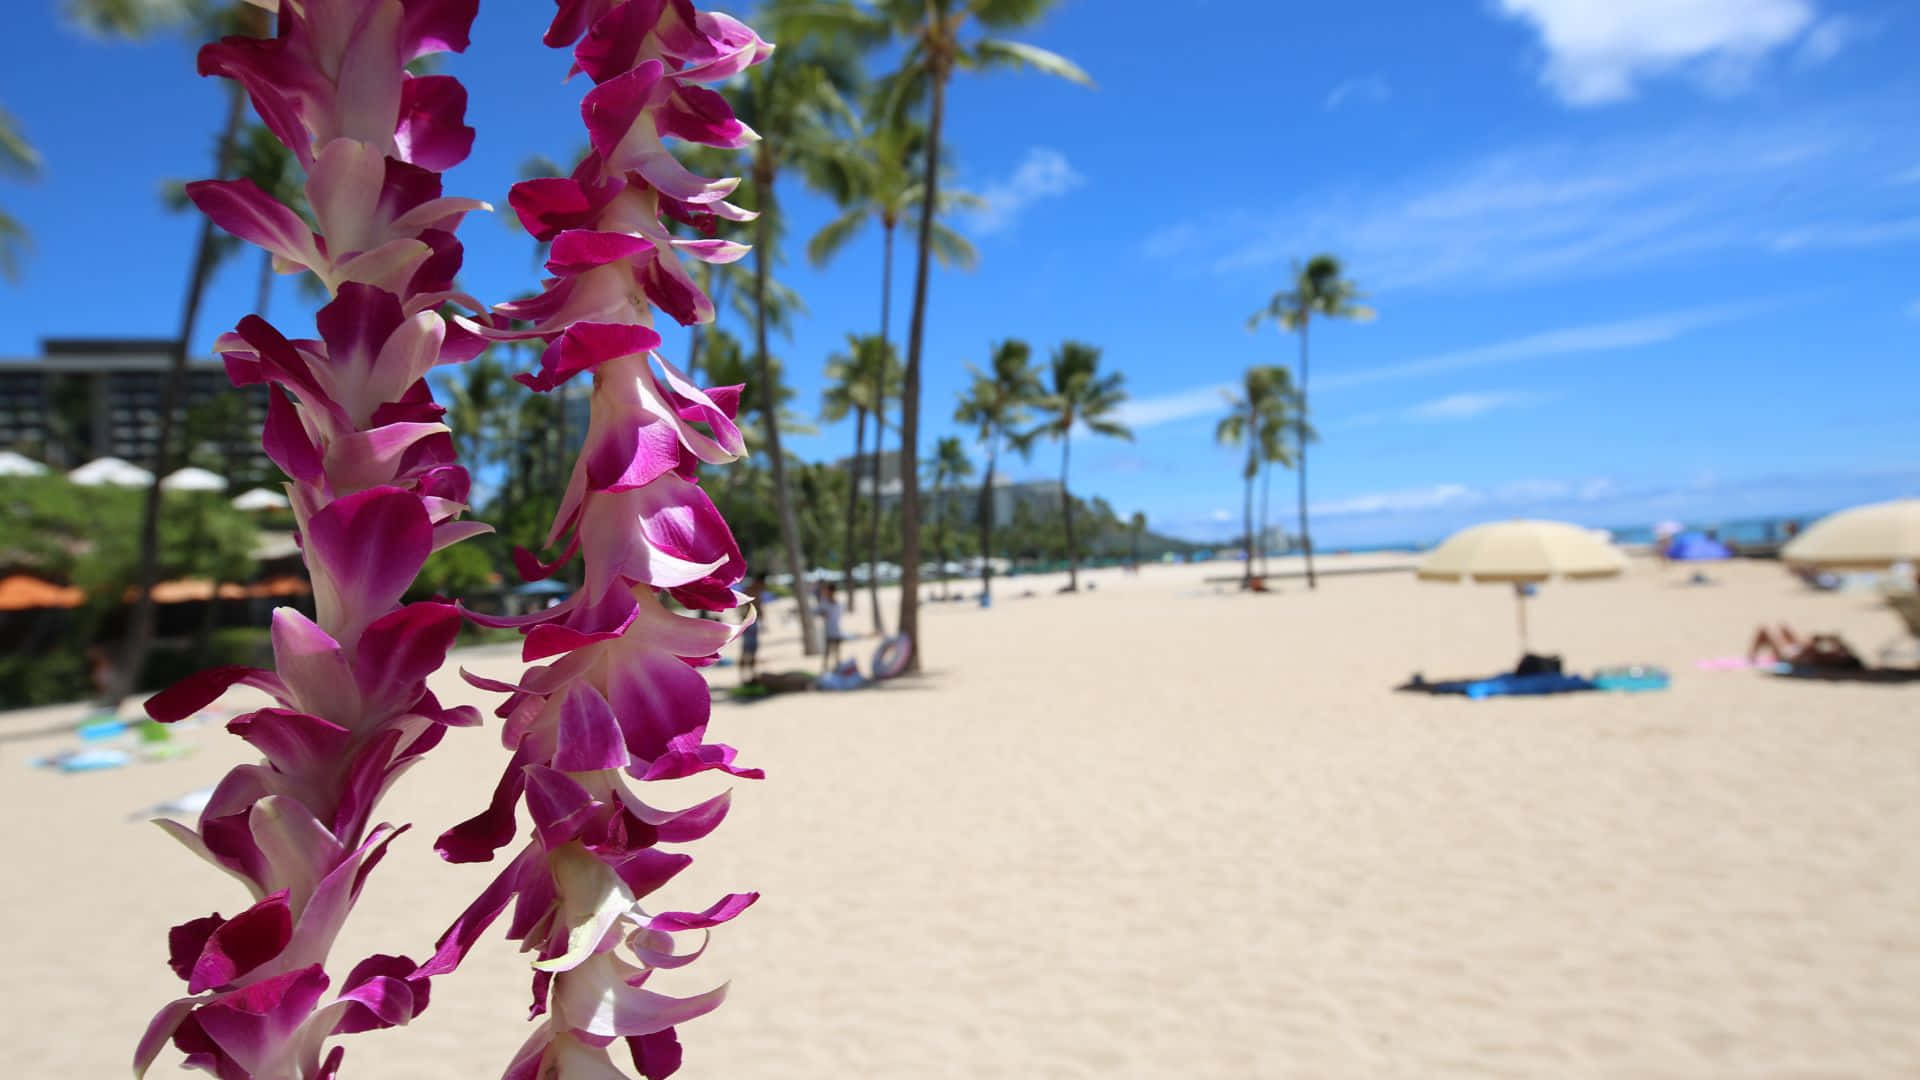 Genießensie Einen Erholsamen Strandurlaub In Hawaii.